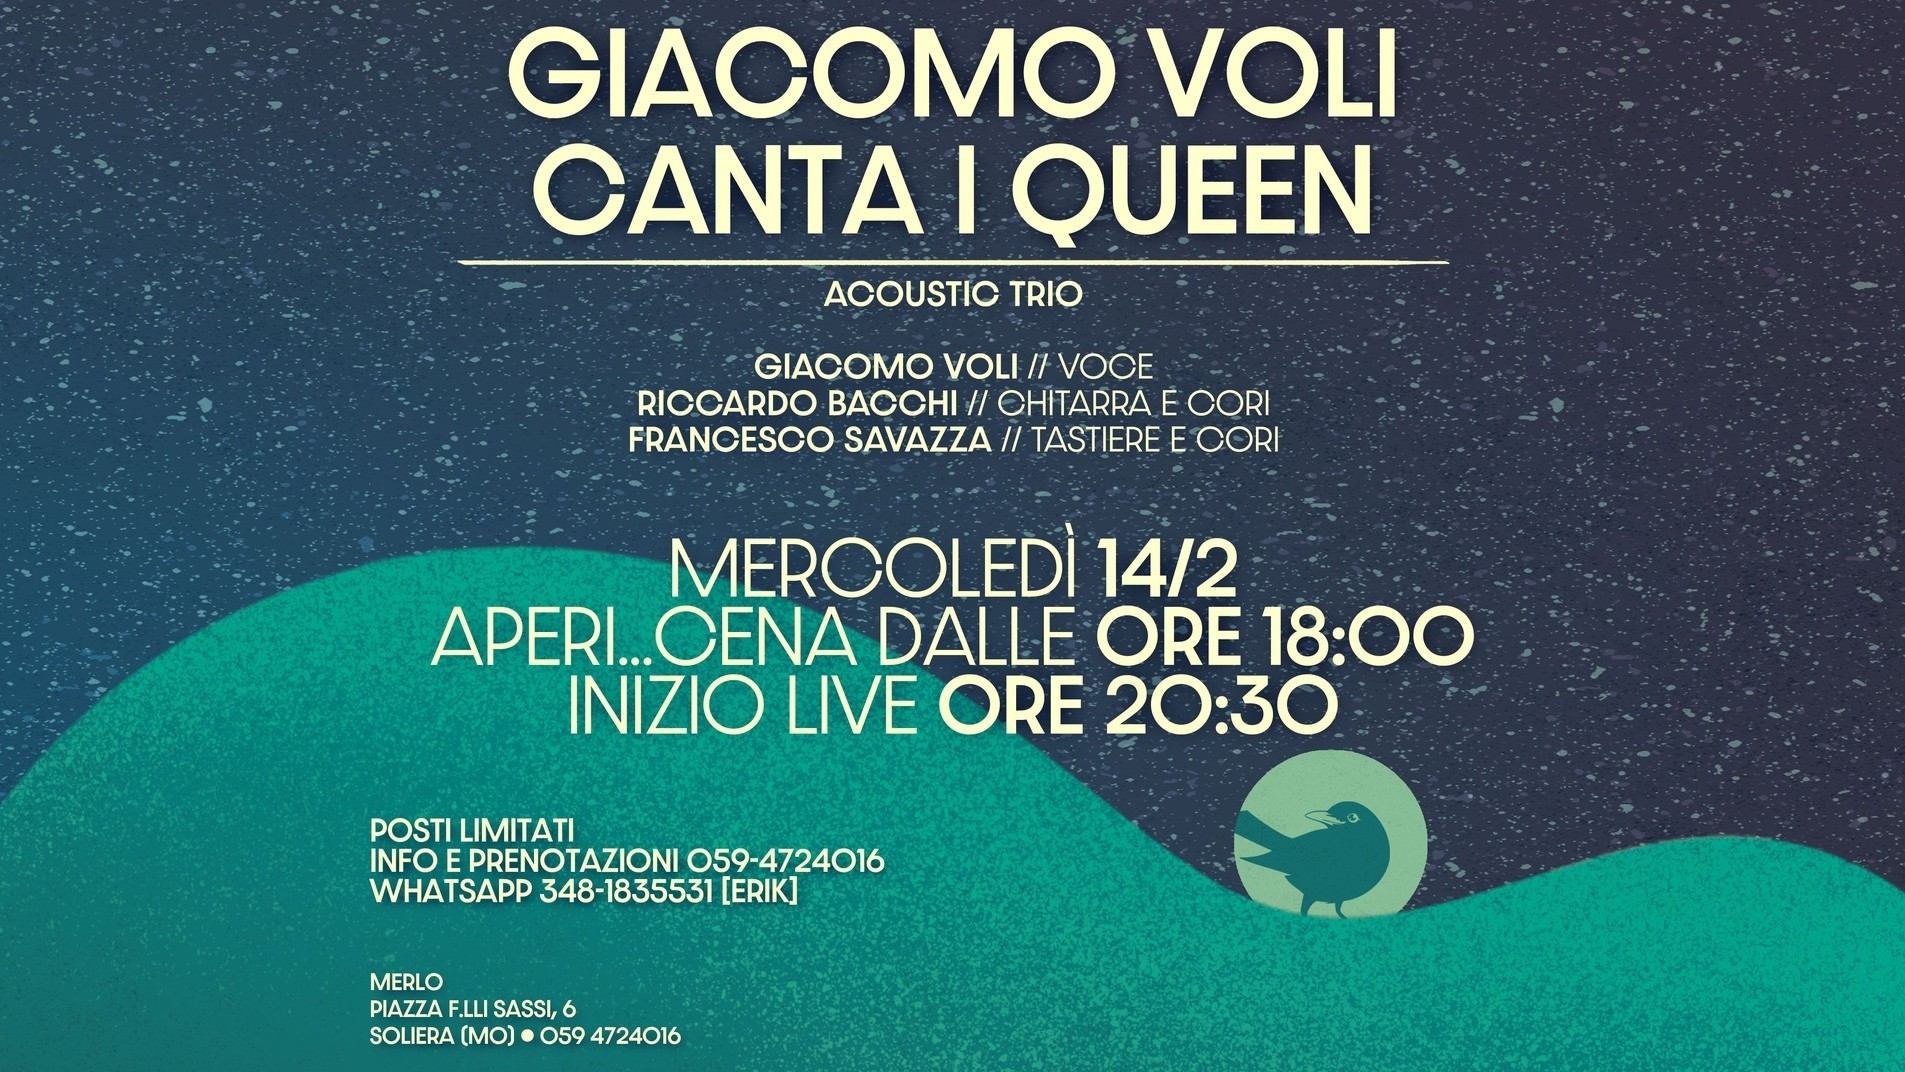 Giacomo Voli Canta I Queen - Acoustic trio